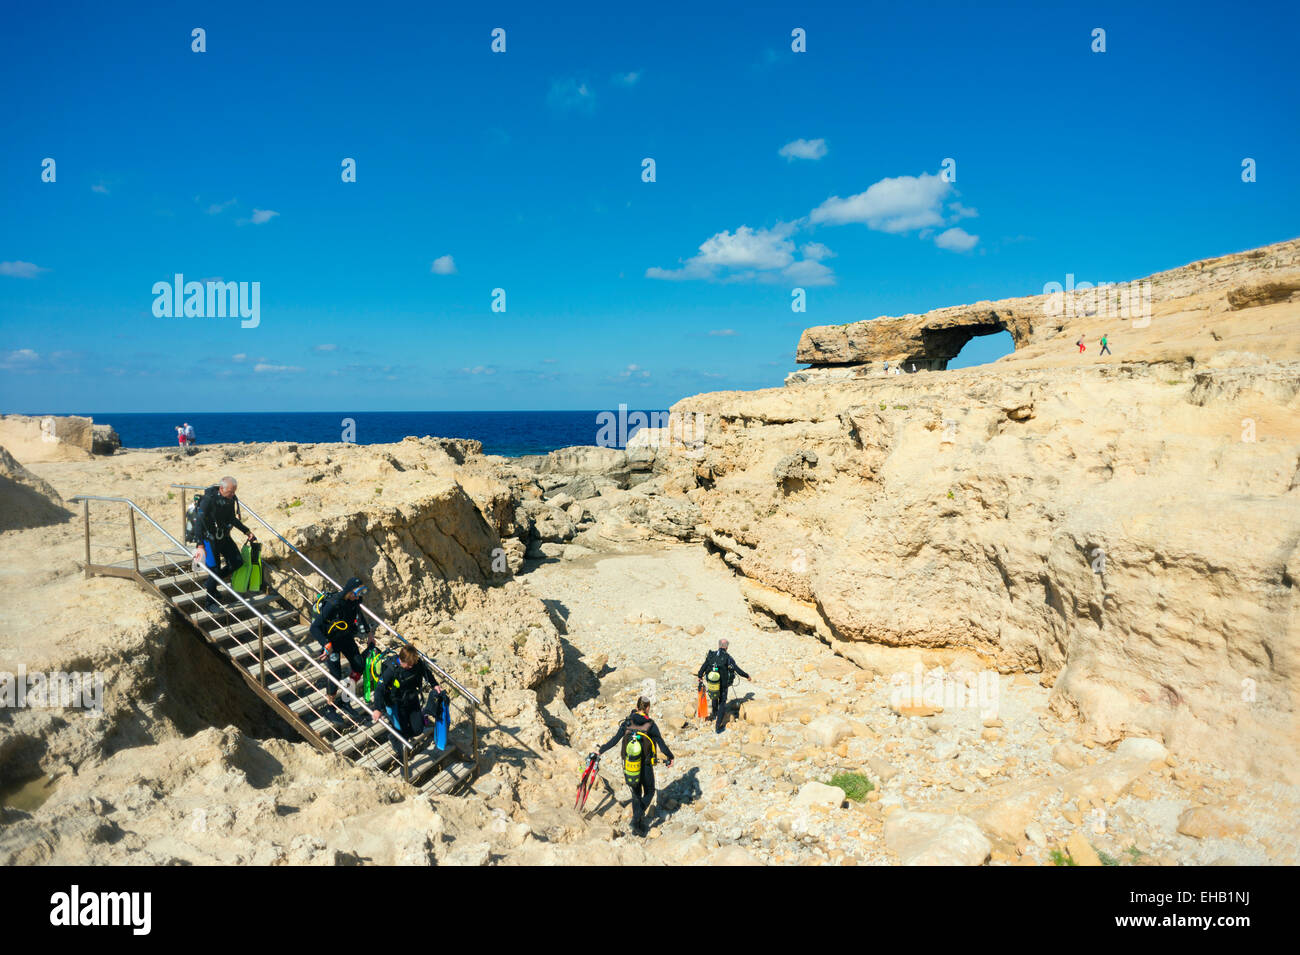 L'Europe méditerranéenne, Malte, Gozo Island, la baie de Dwerja, la fenêtre d'Azur arche naturelle, des plongeurs au Blue Hole Banque D'Images